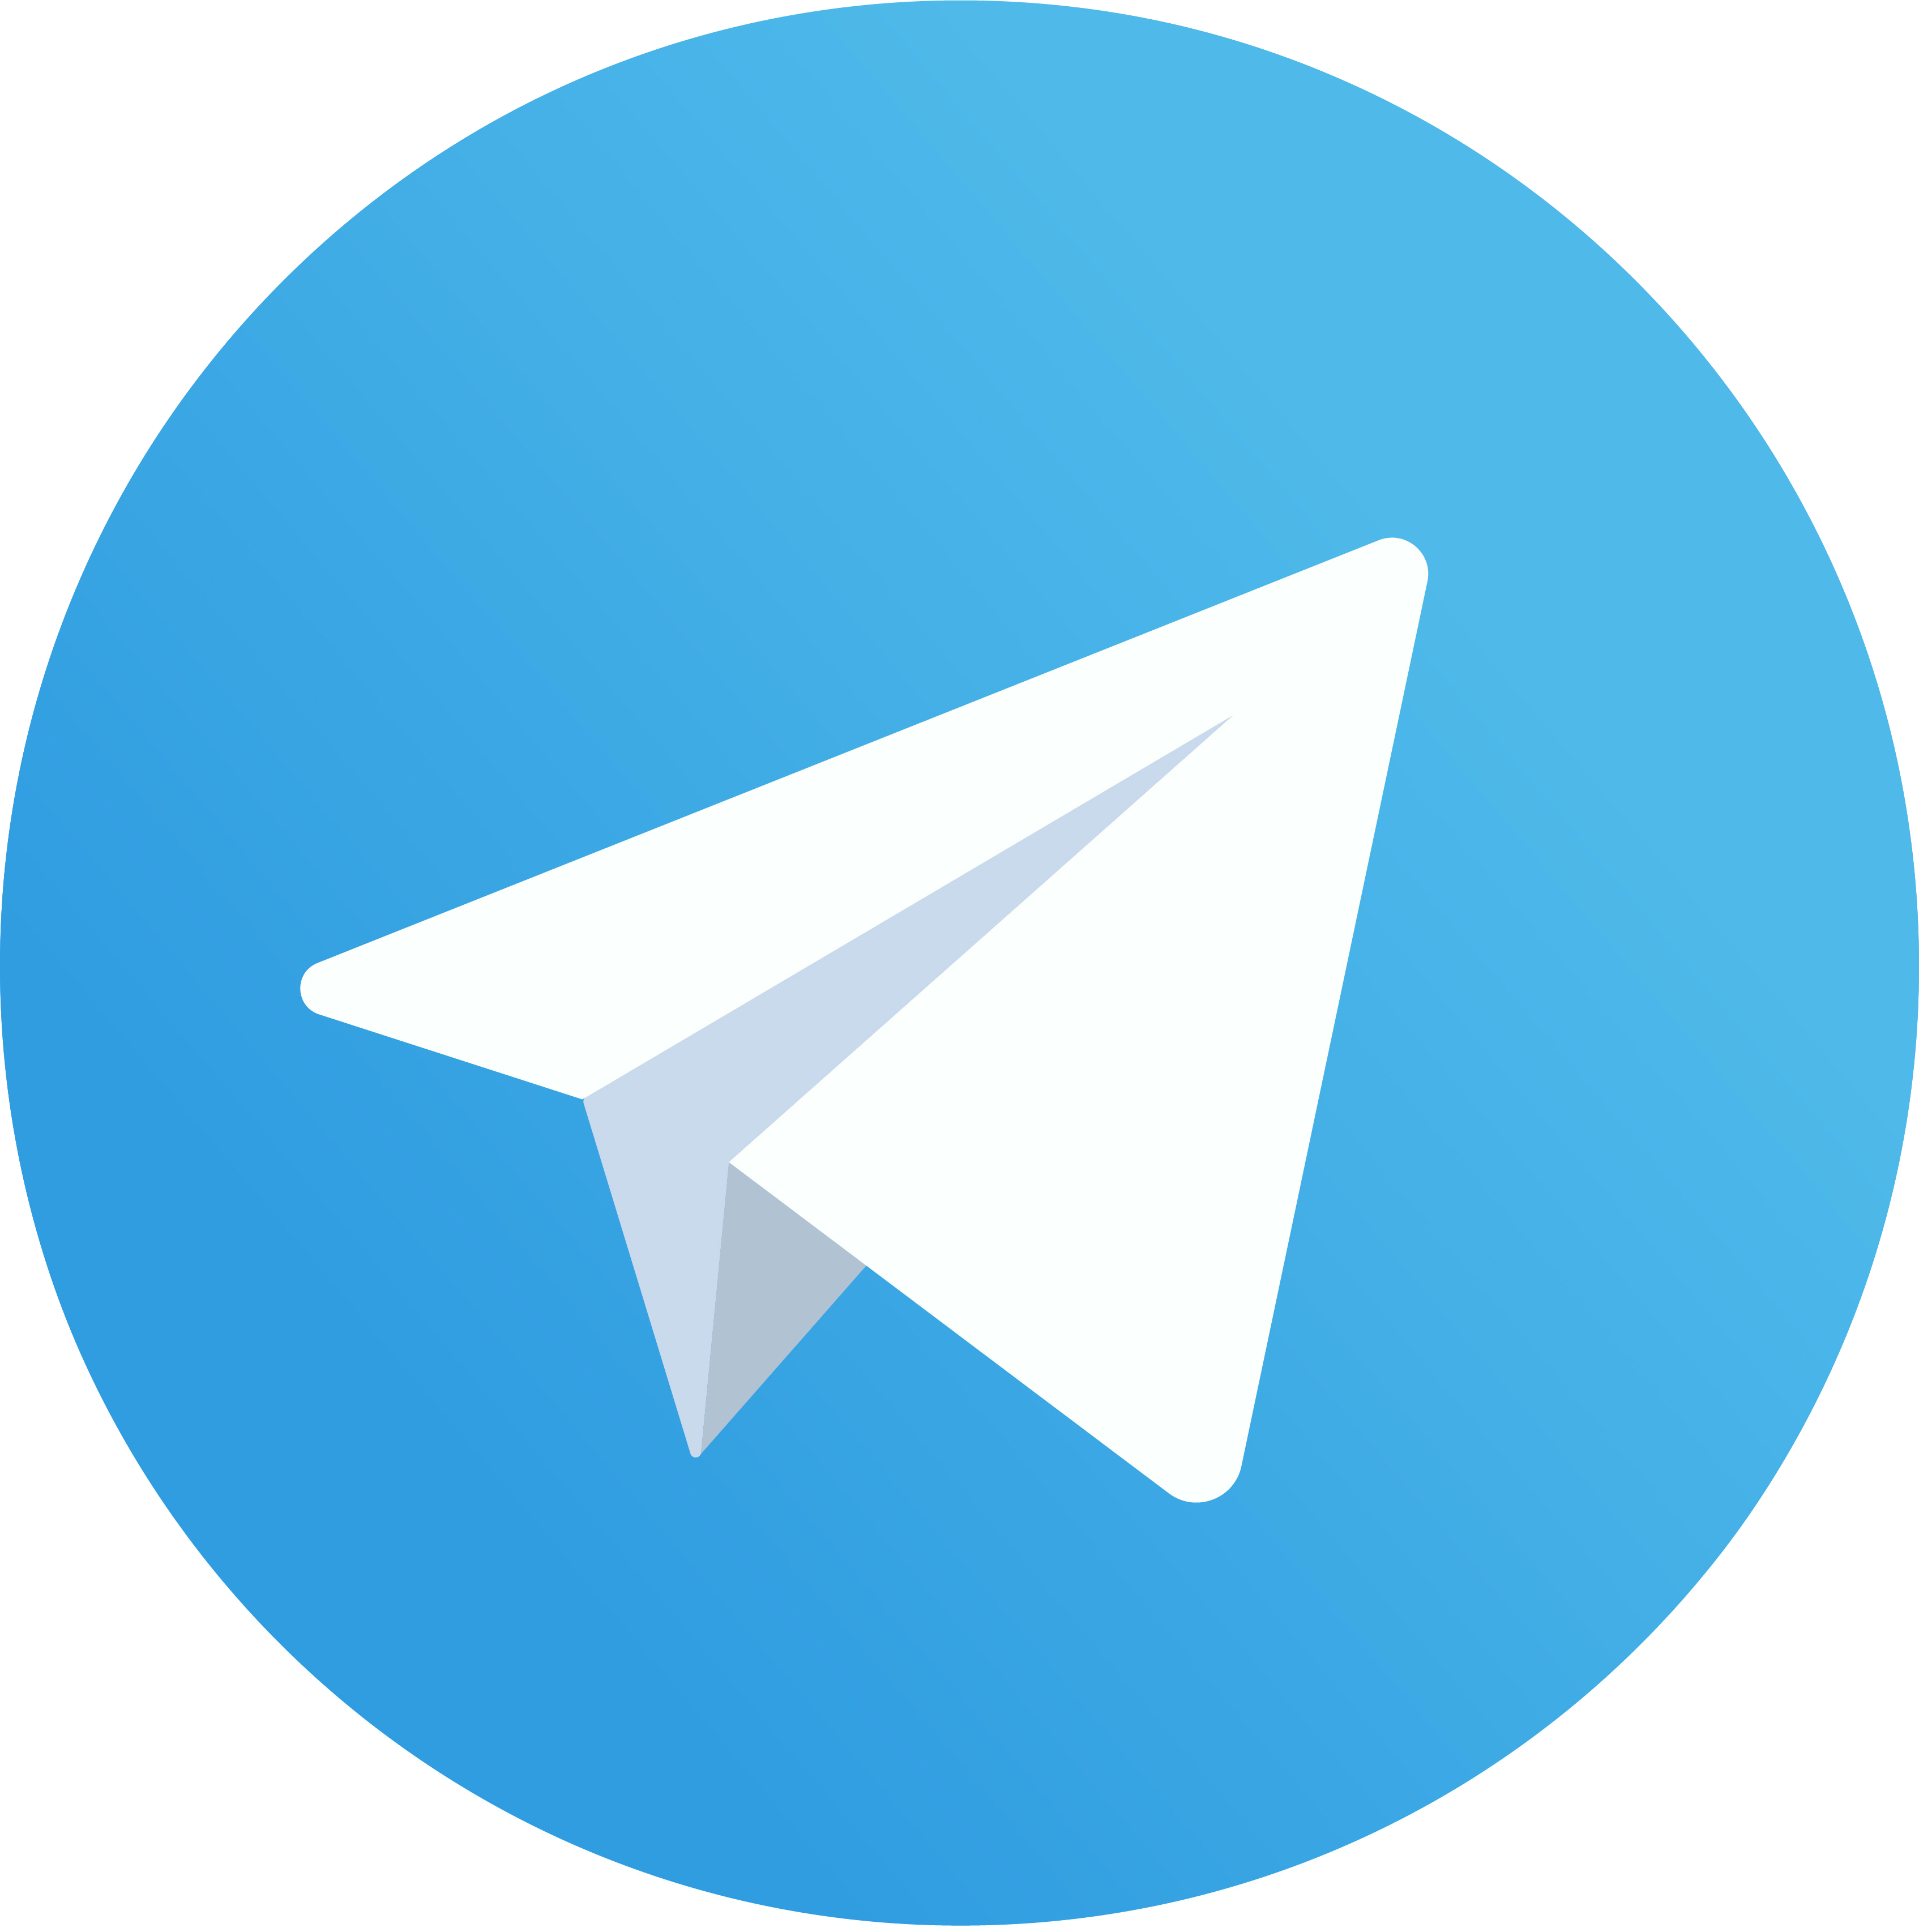 Работающие советы и анонсы мероприятий — каждый день в нашем Telegram-канале